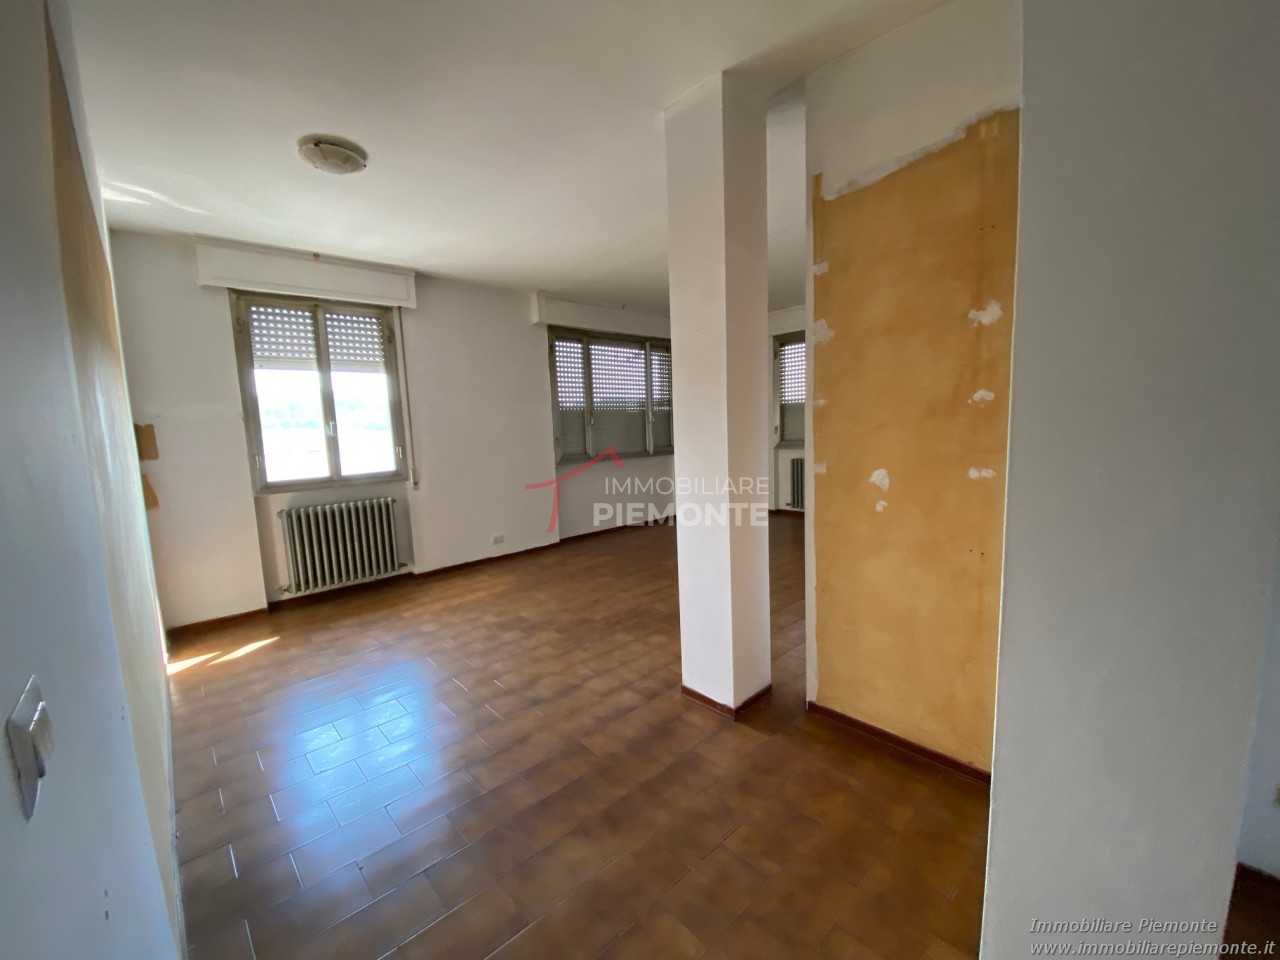 Appartamento in affitto a Romagnano Sesia, 3 locali, prezzo € 420 | CambioCasa.it